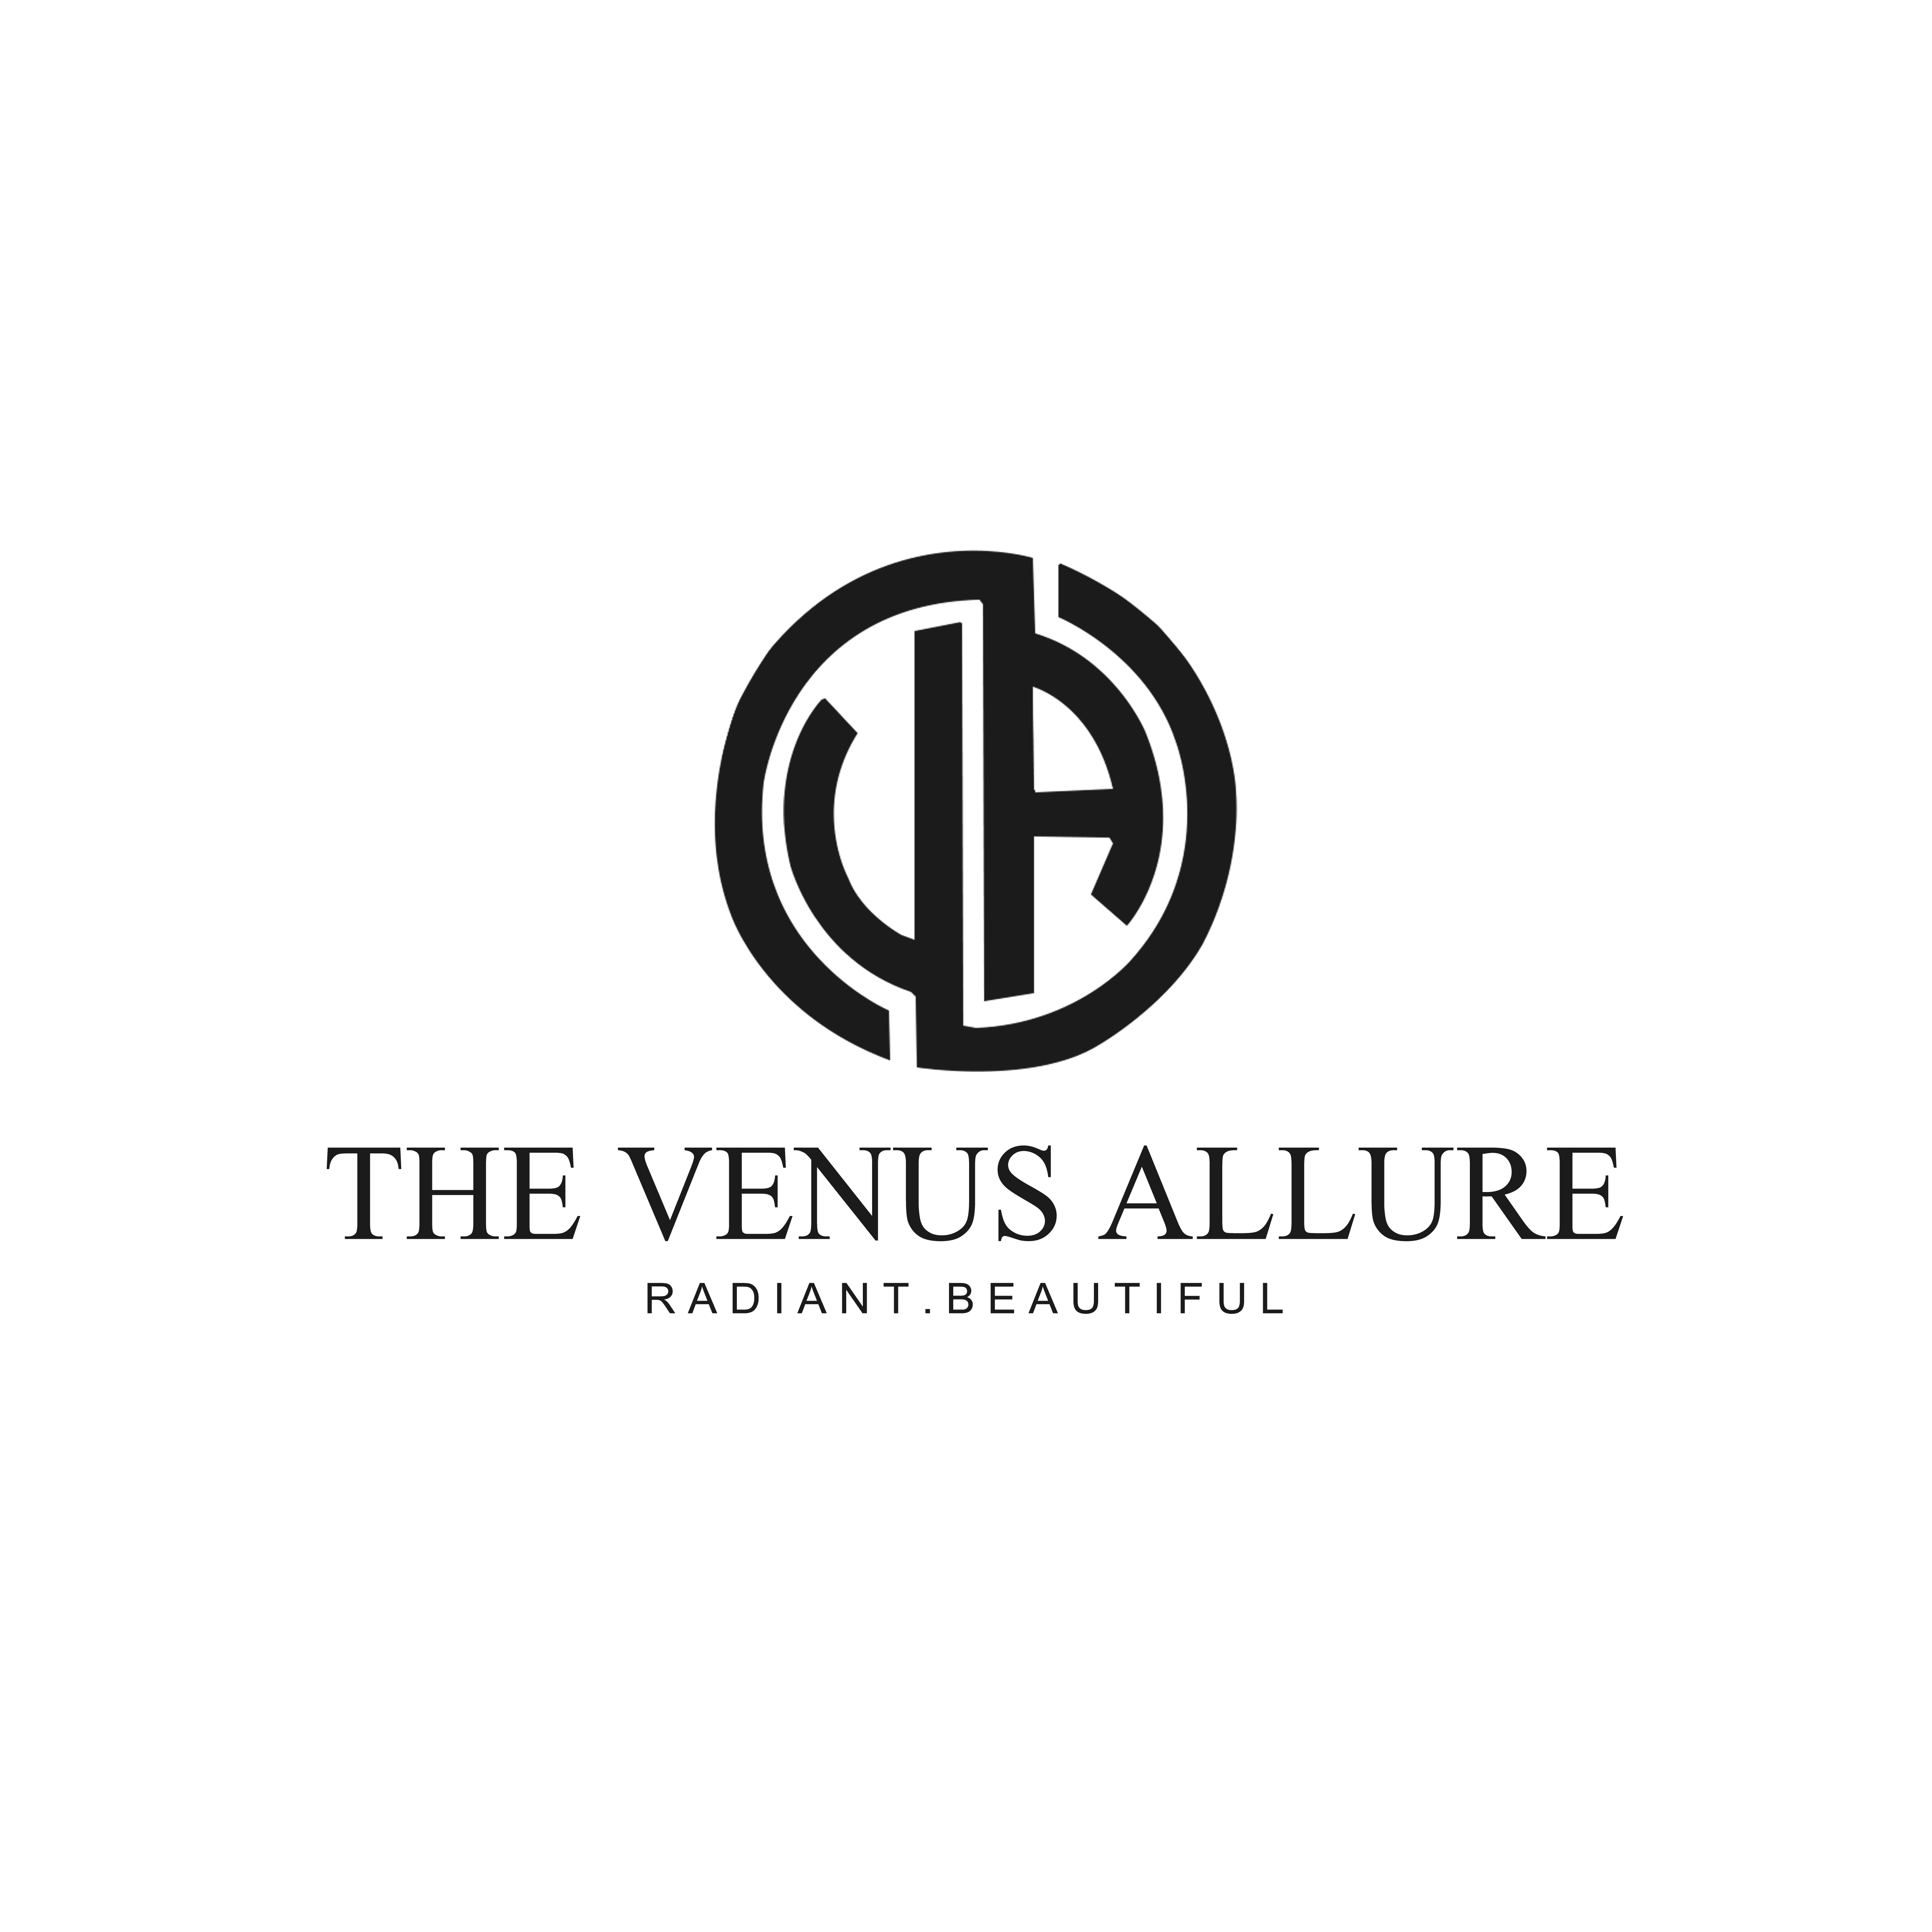 The Venus Allure